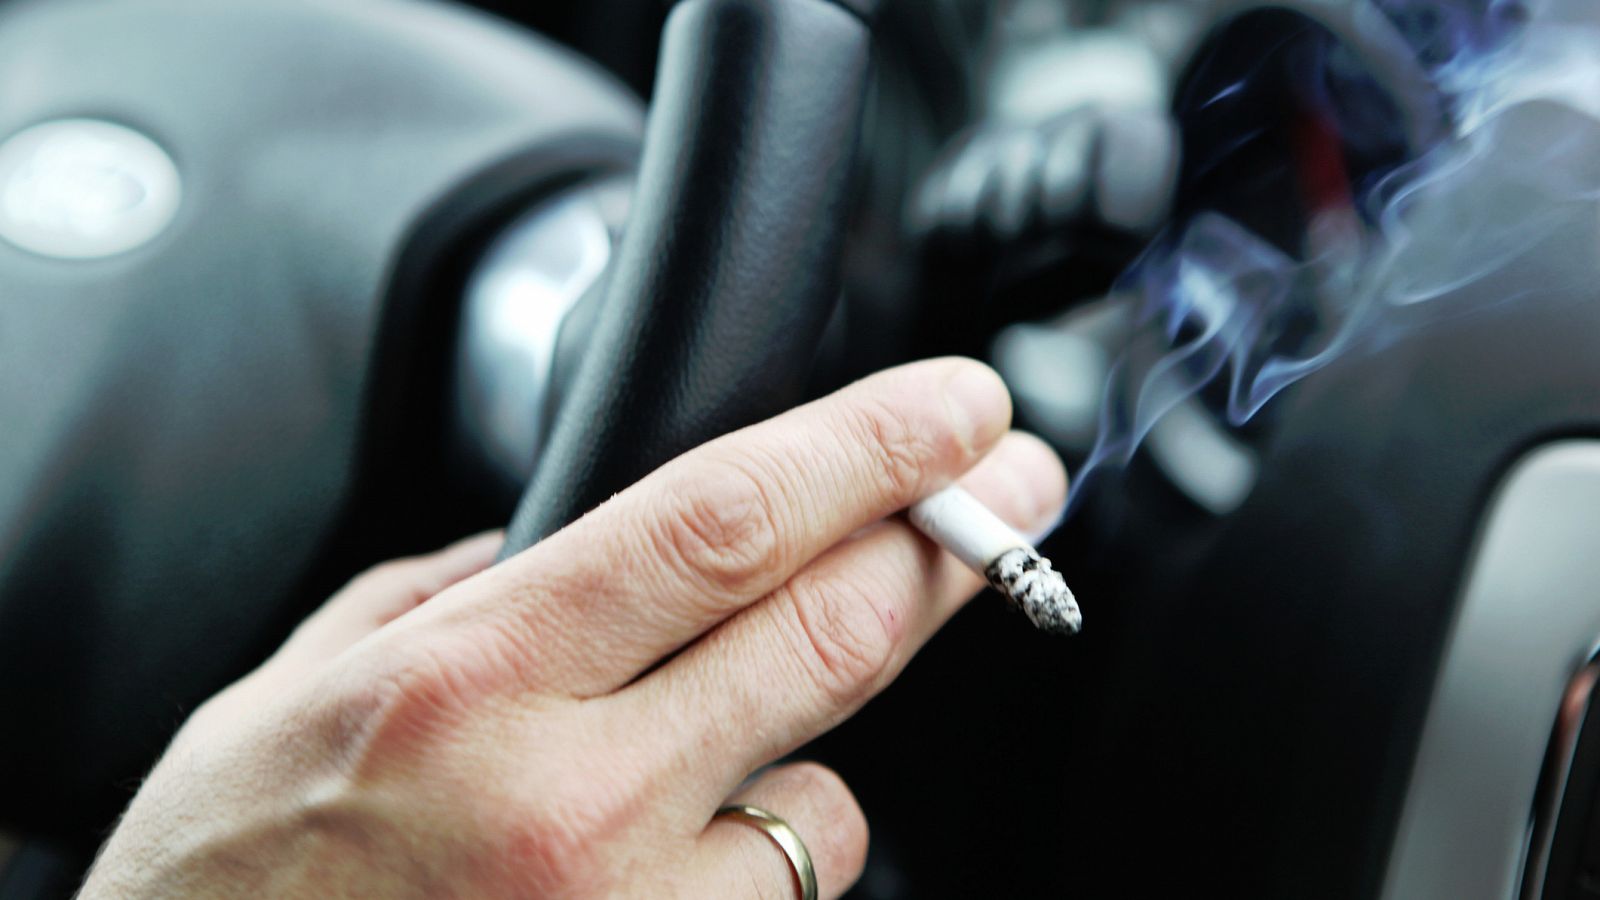 Cataluña prohibirá fumar dentro de los vehículos privados, tanto si viajan niños como si no.